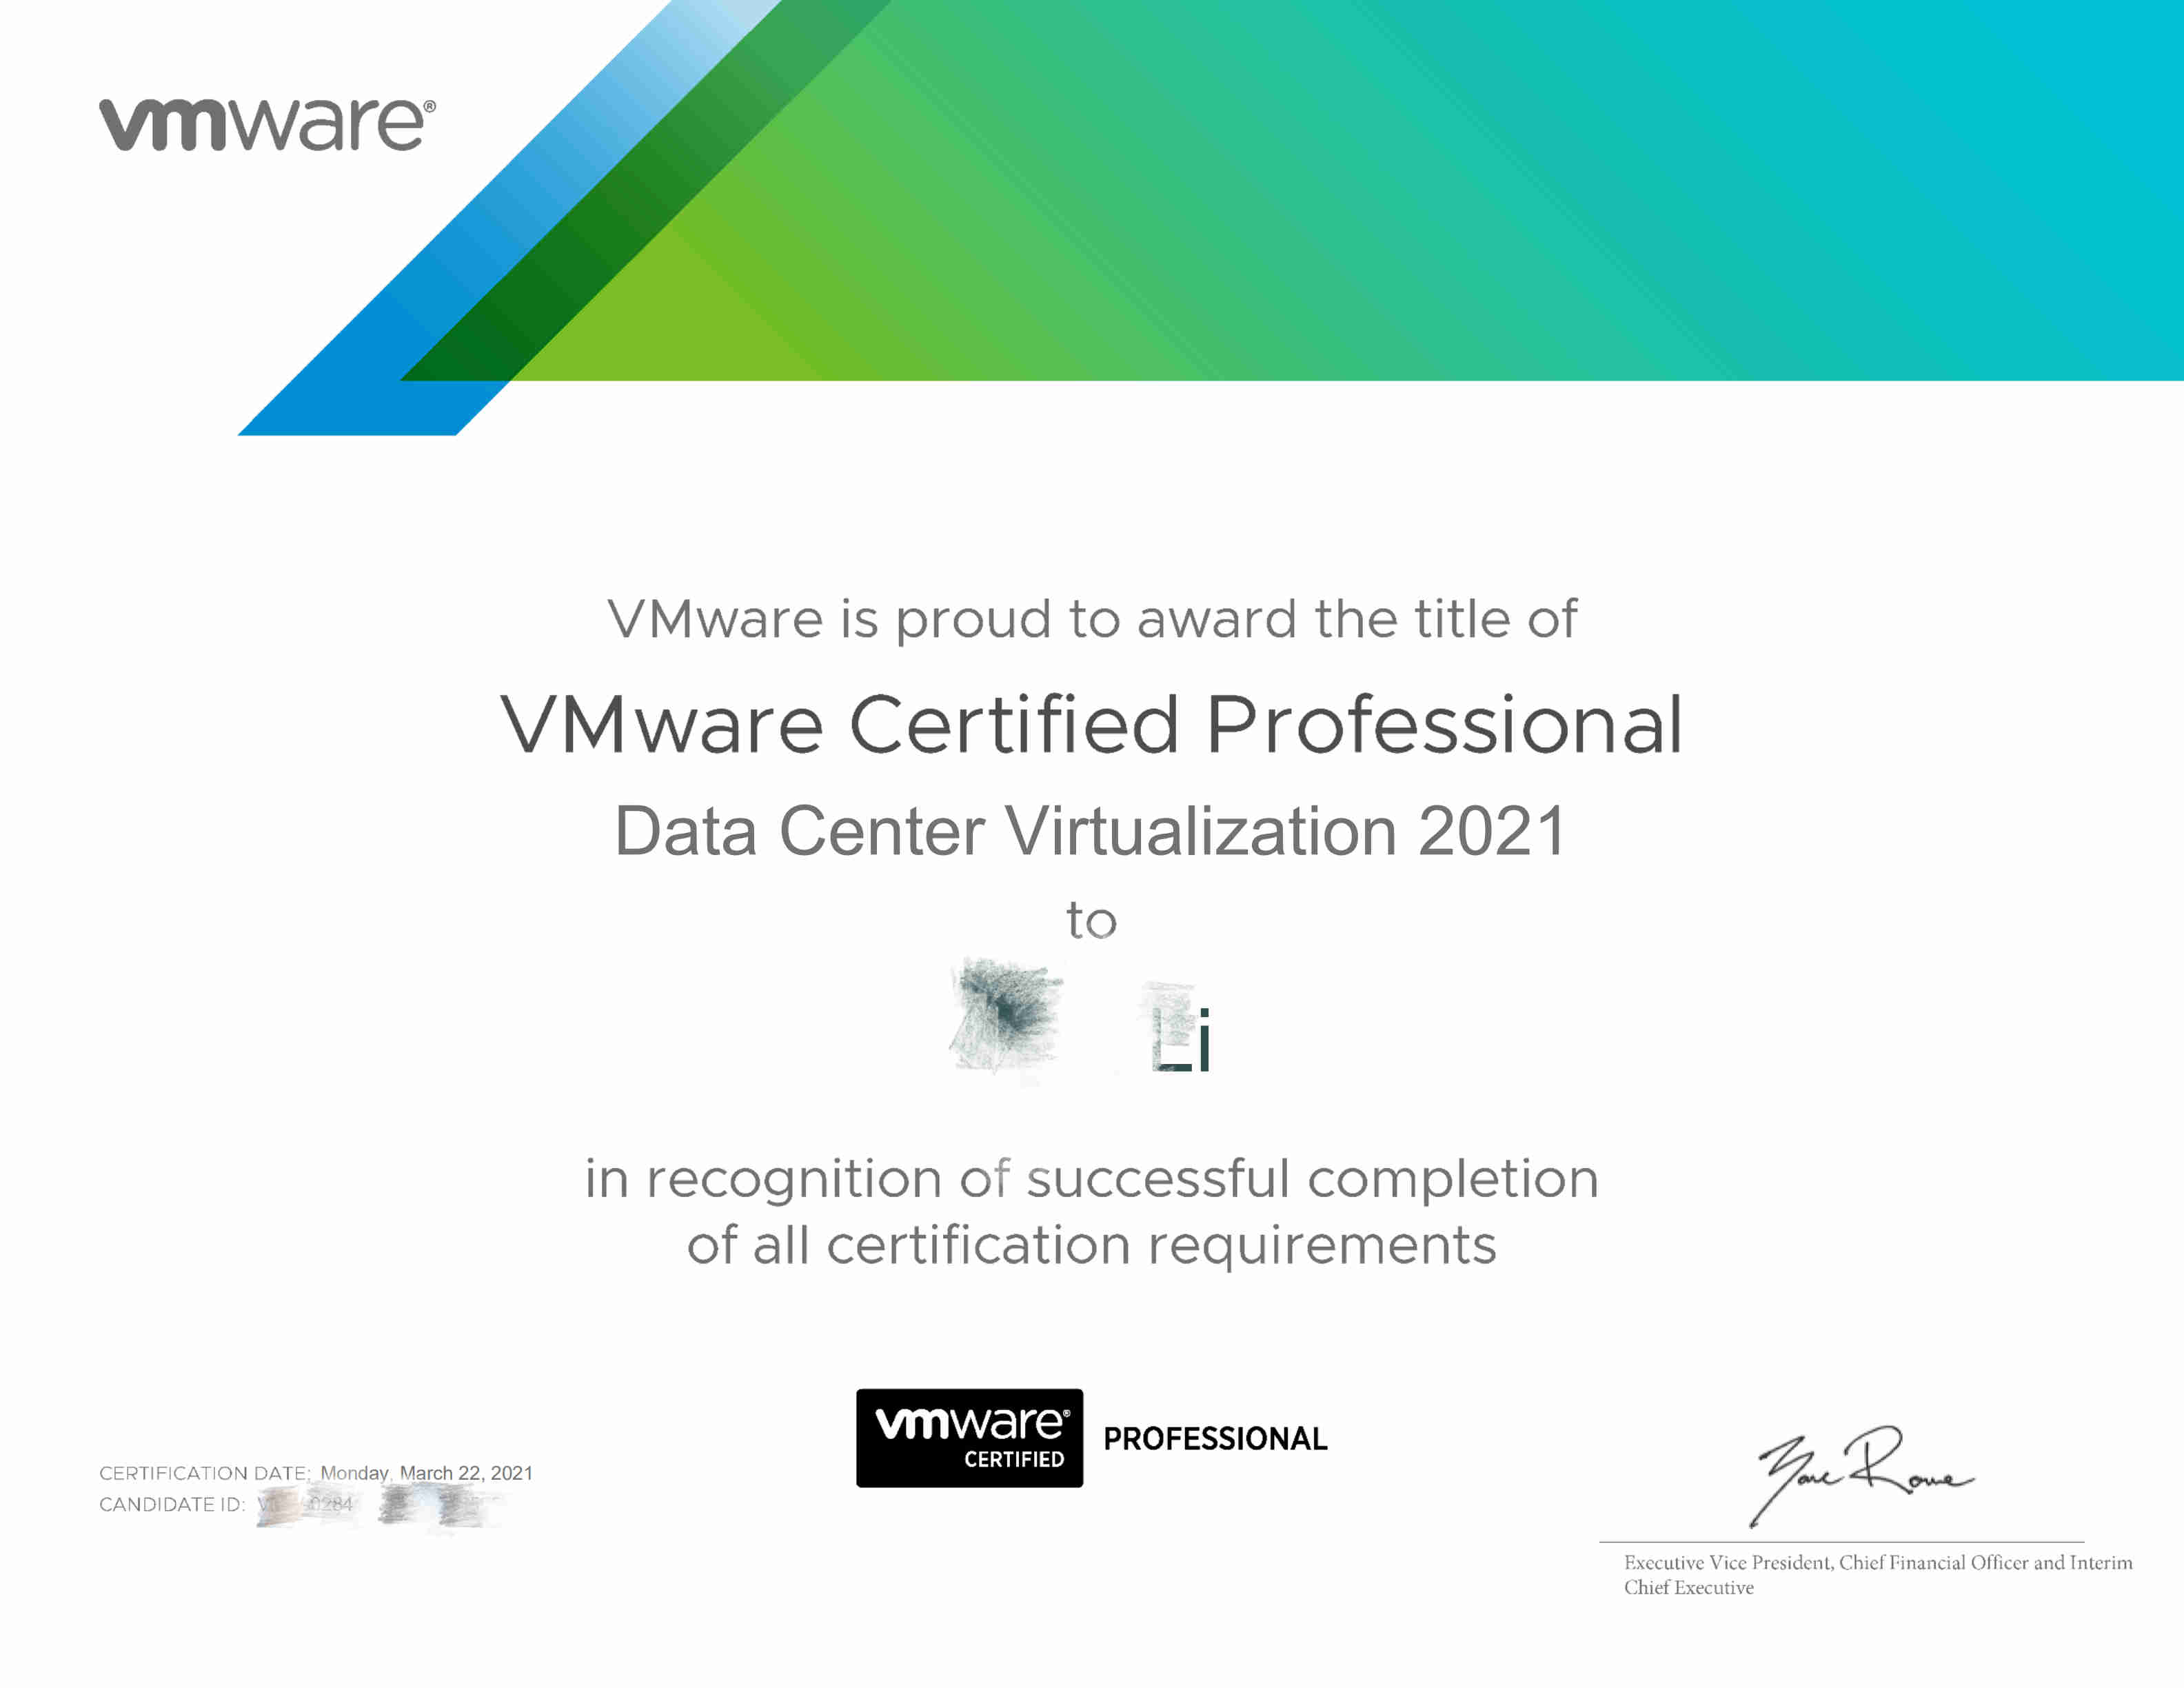 Data Center Virtualization 2021 certificate_pixelate.jpg